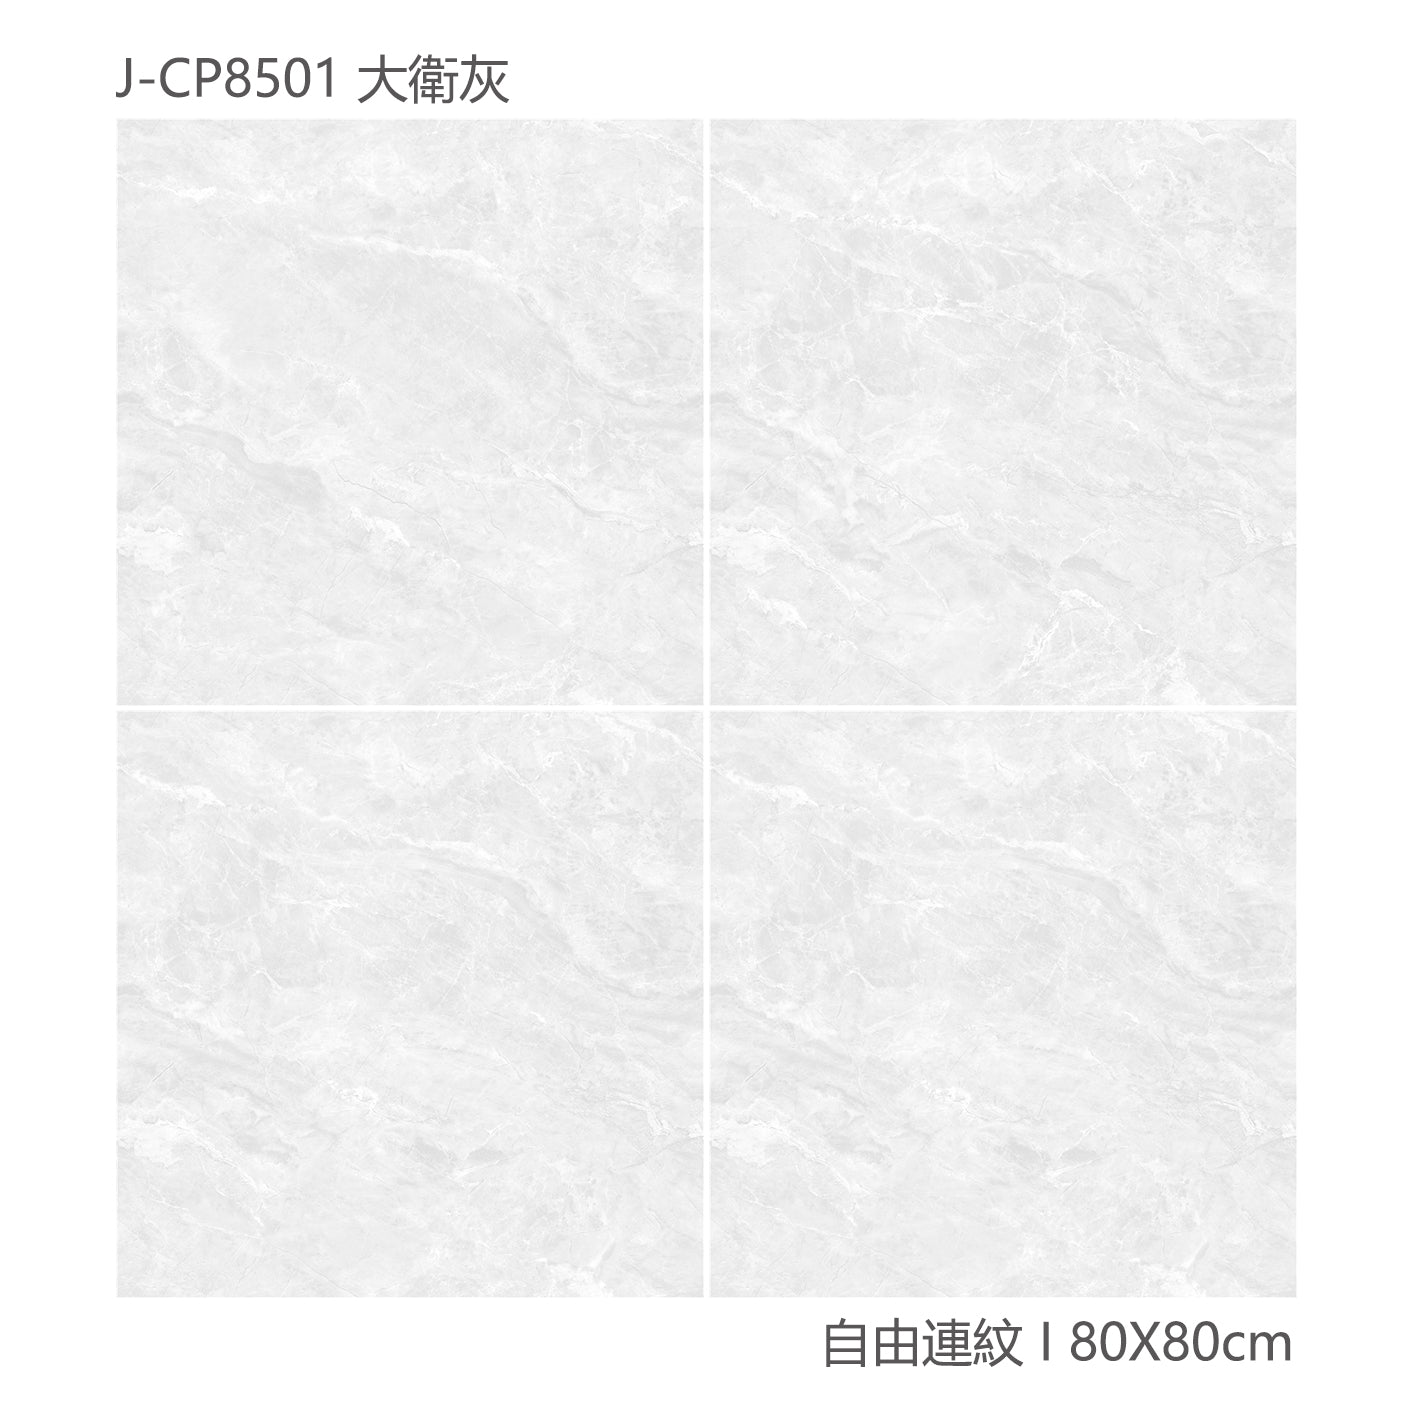 中國佛山瓷磚 China Foshan Marble Tiles Glossy 大理石瓷磚 連紋瓷磚 地磚 墻磚 釉面磚 亮光面  大衛灰 CP8501 80×80cm